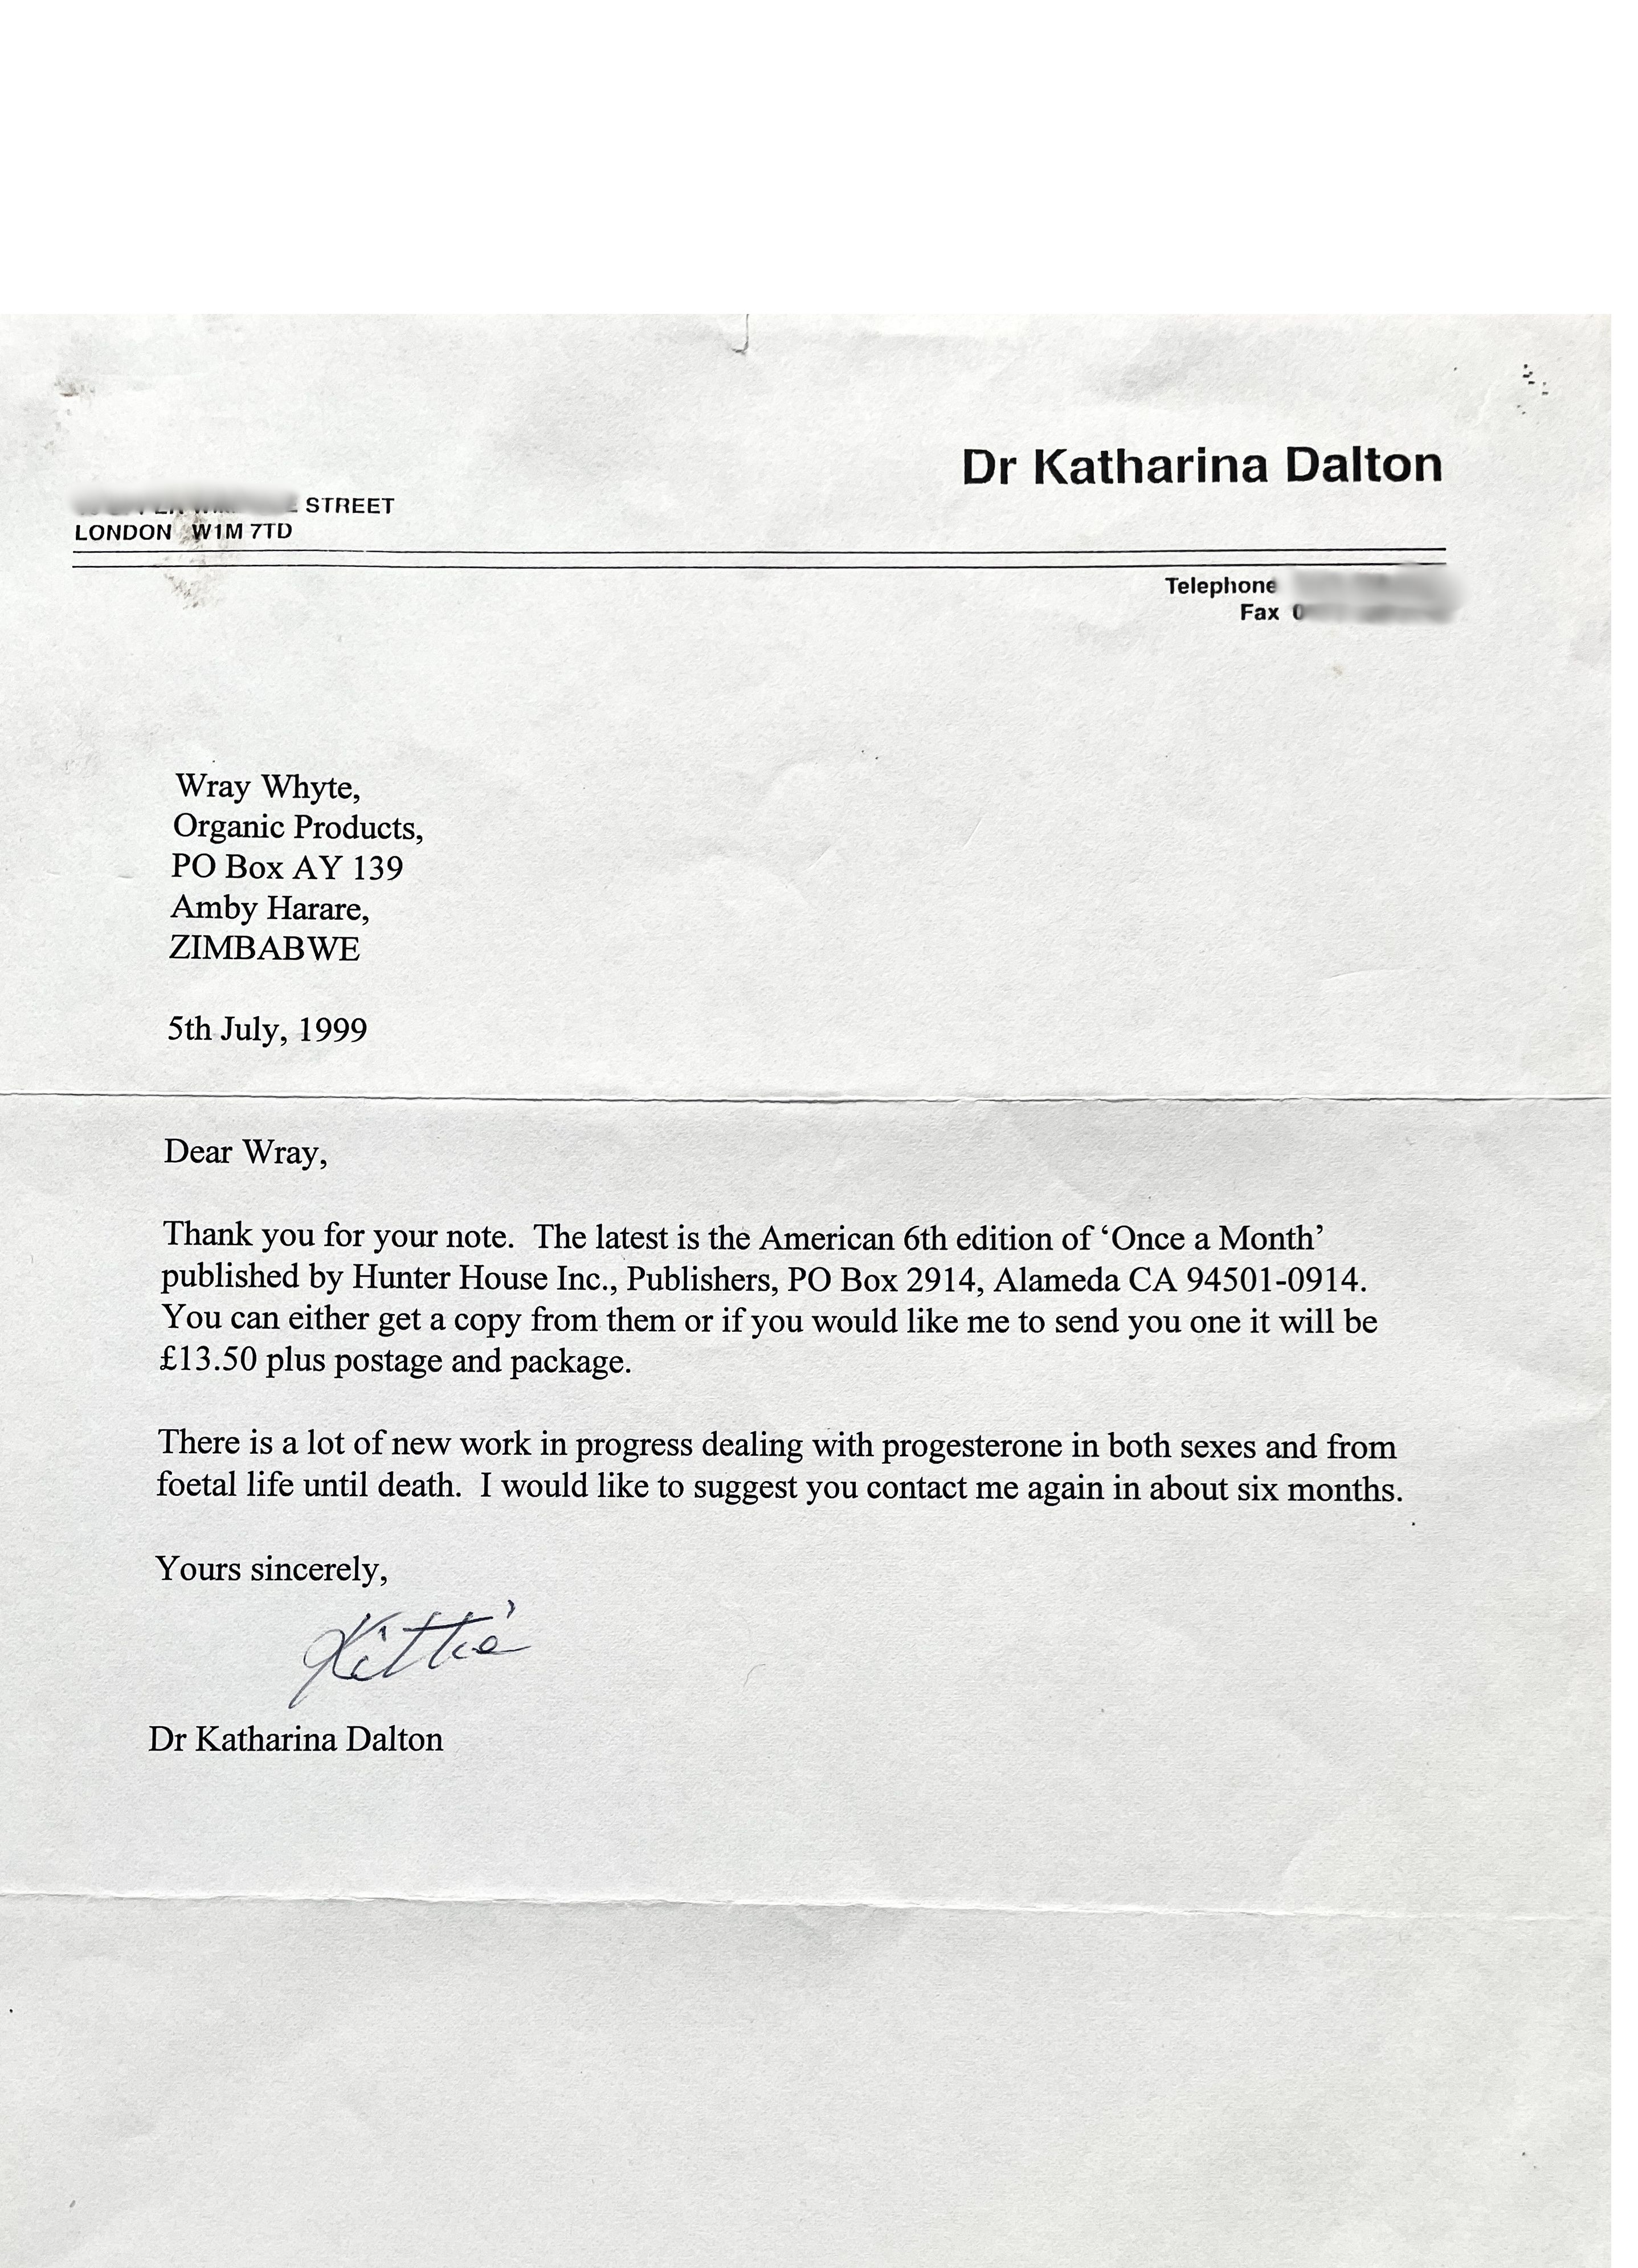 Dr Dalton July 1999